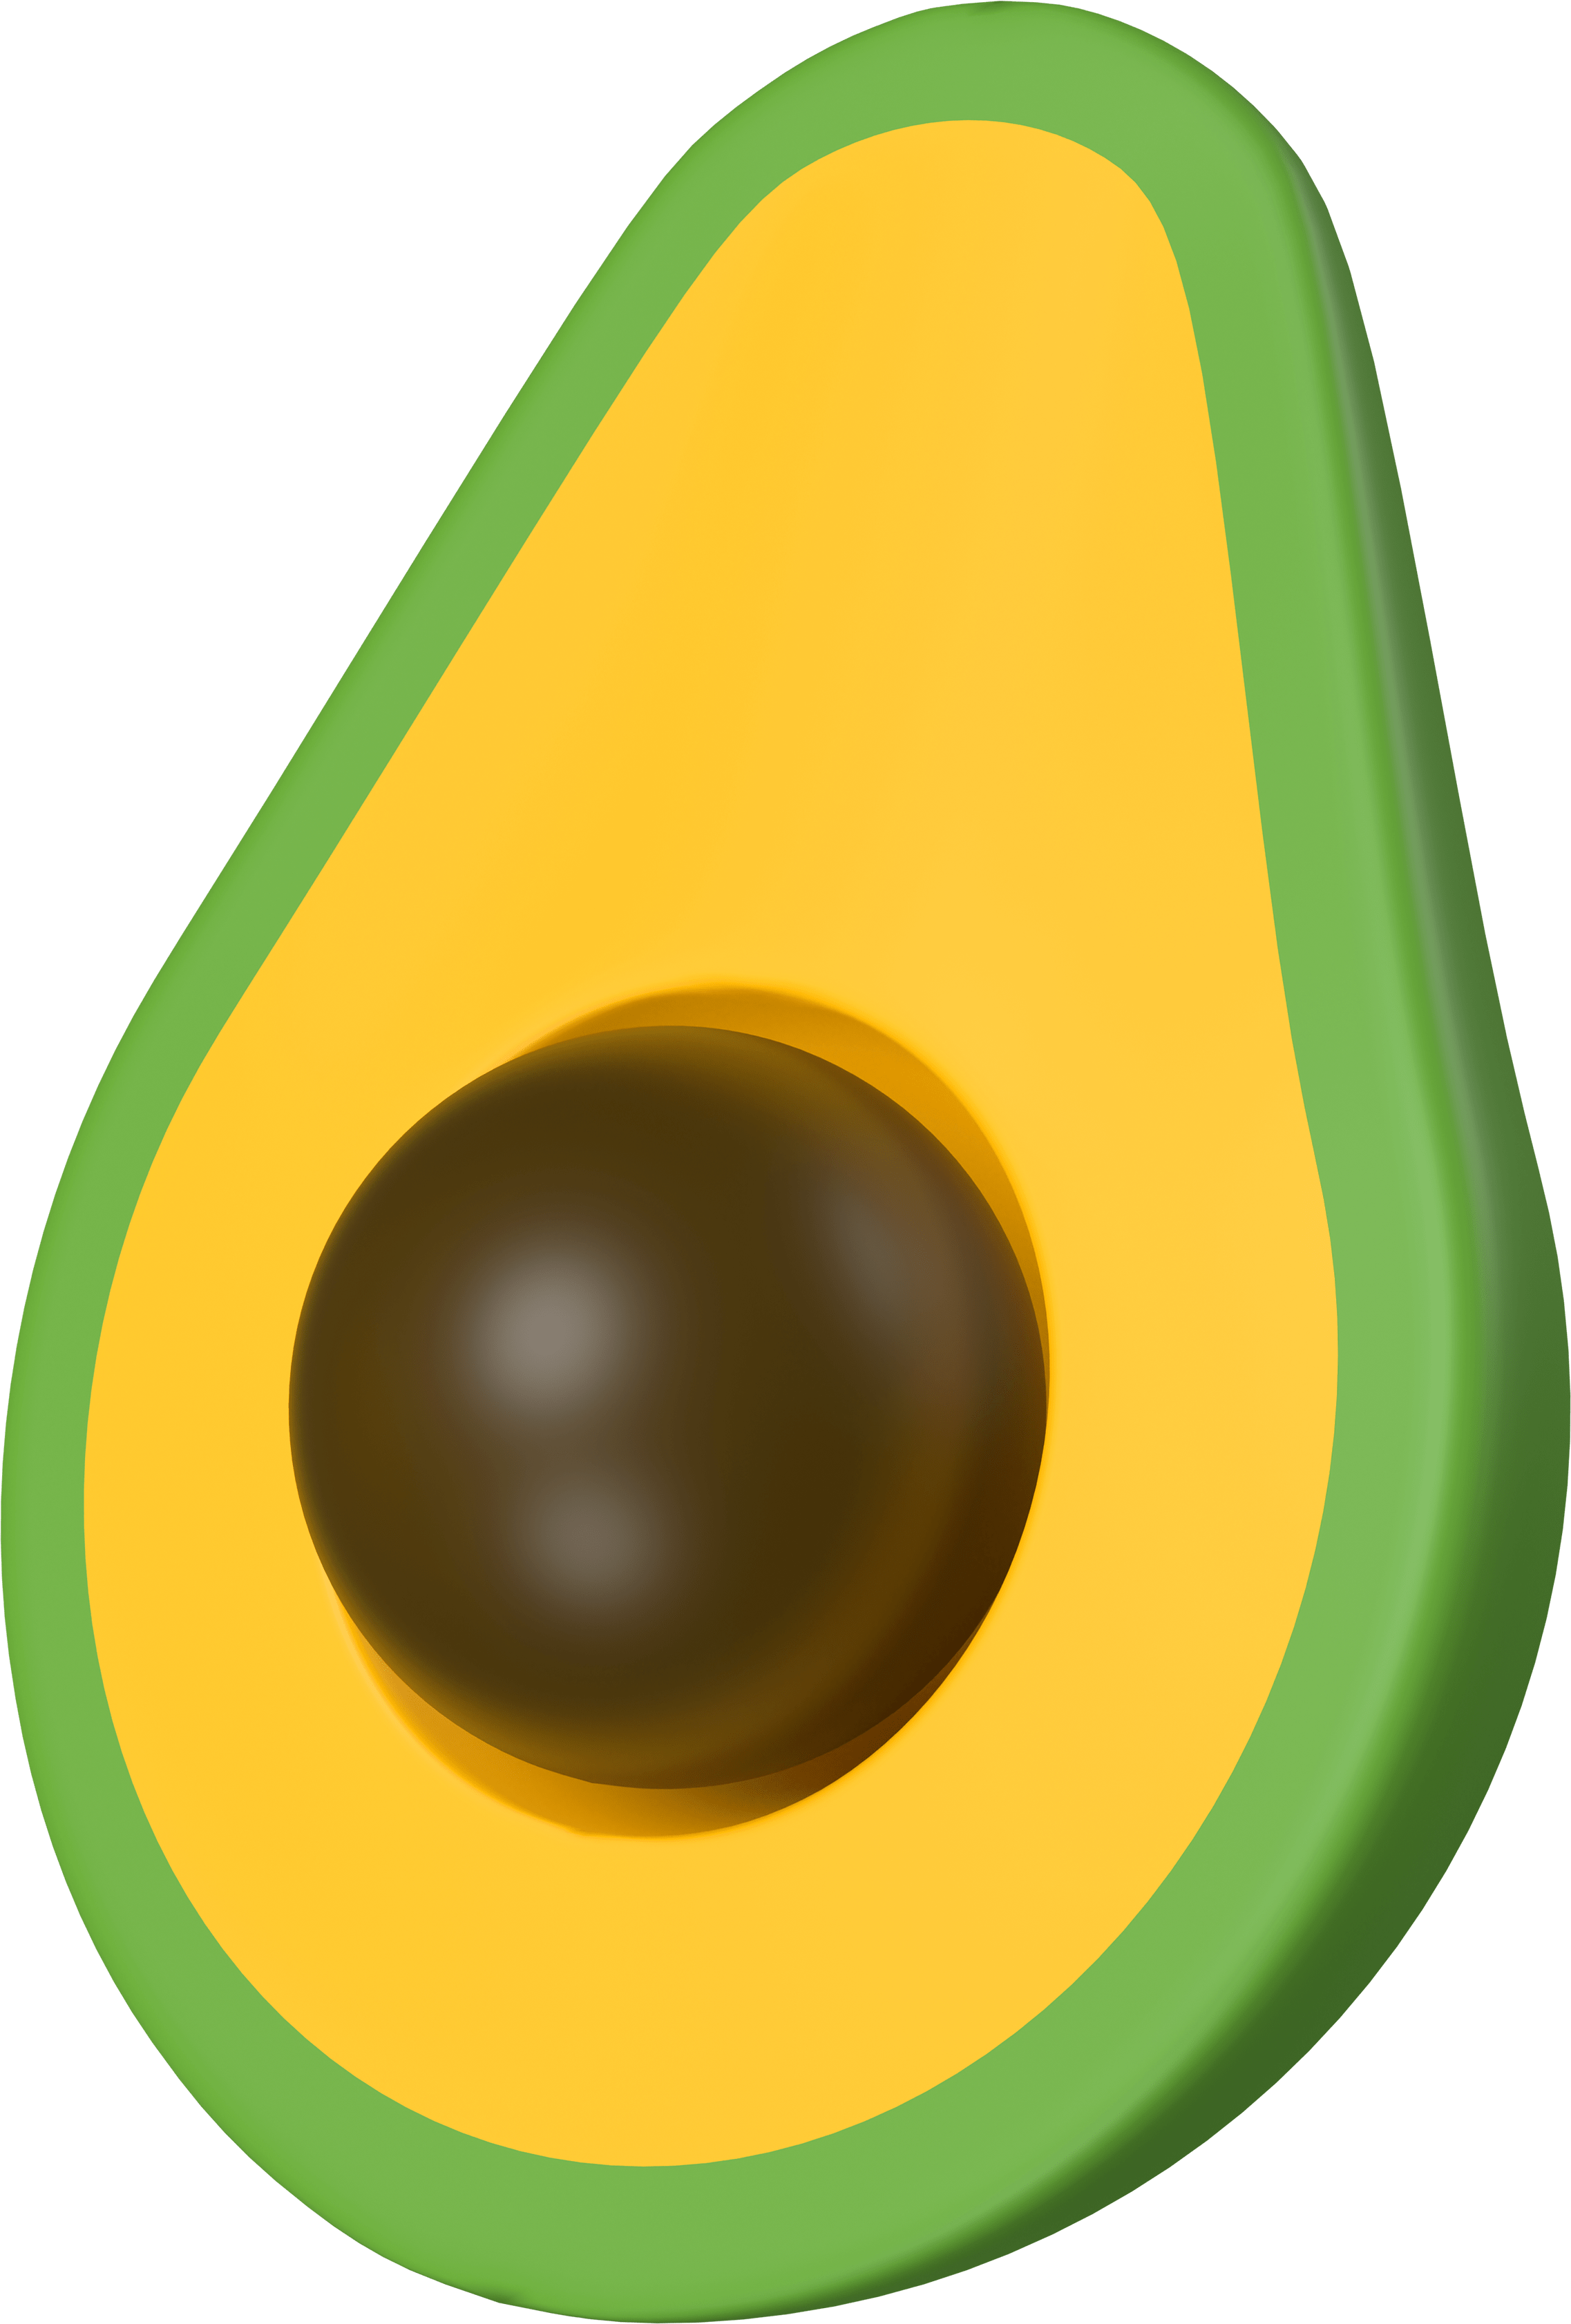 A 3D emoji of an avocado